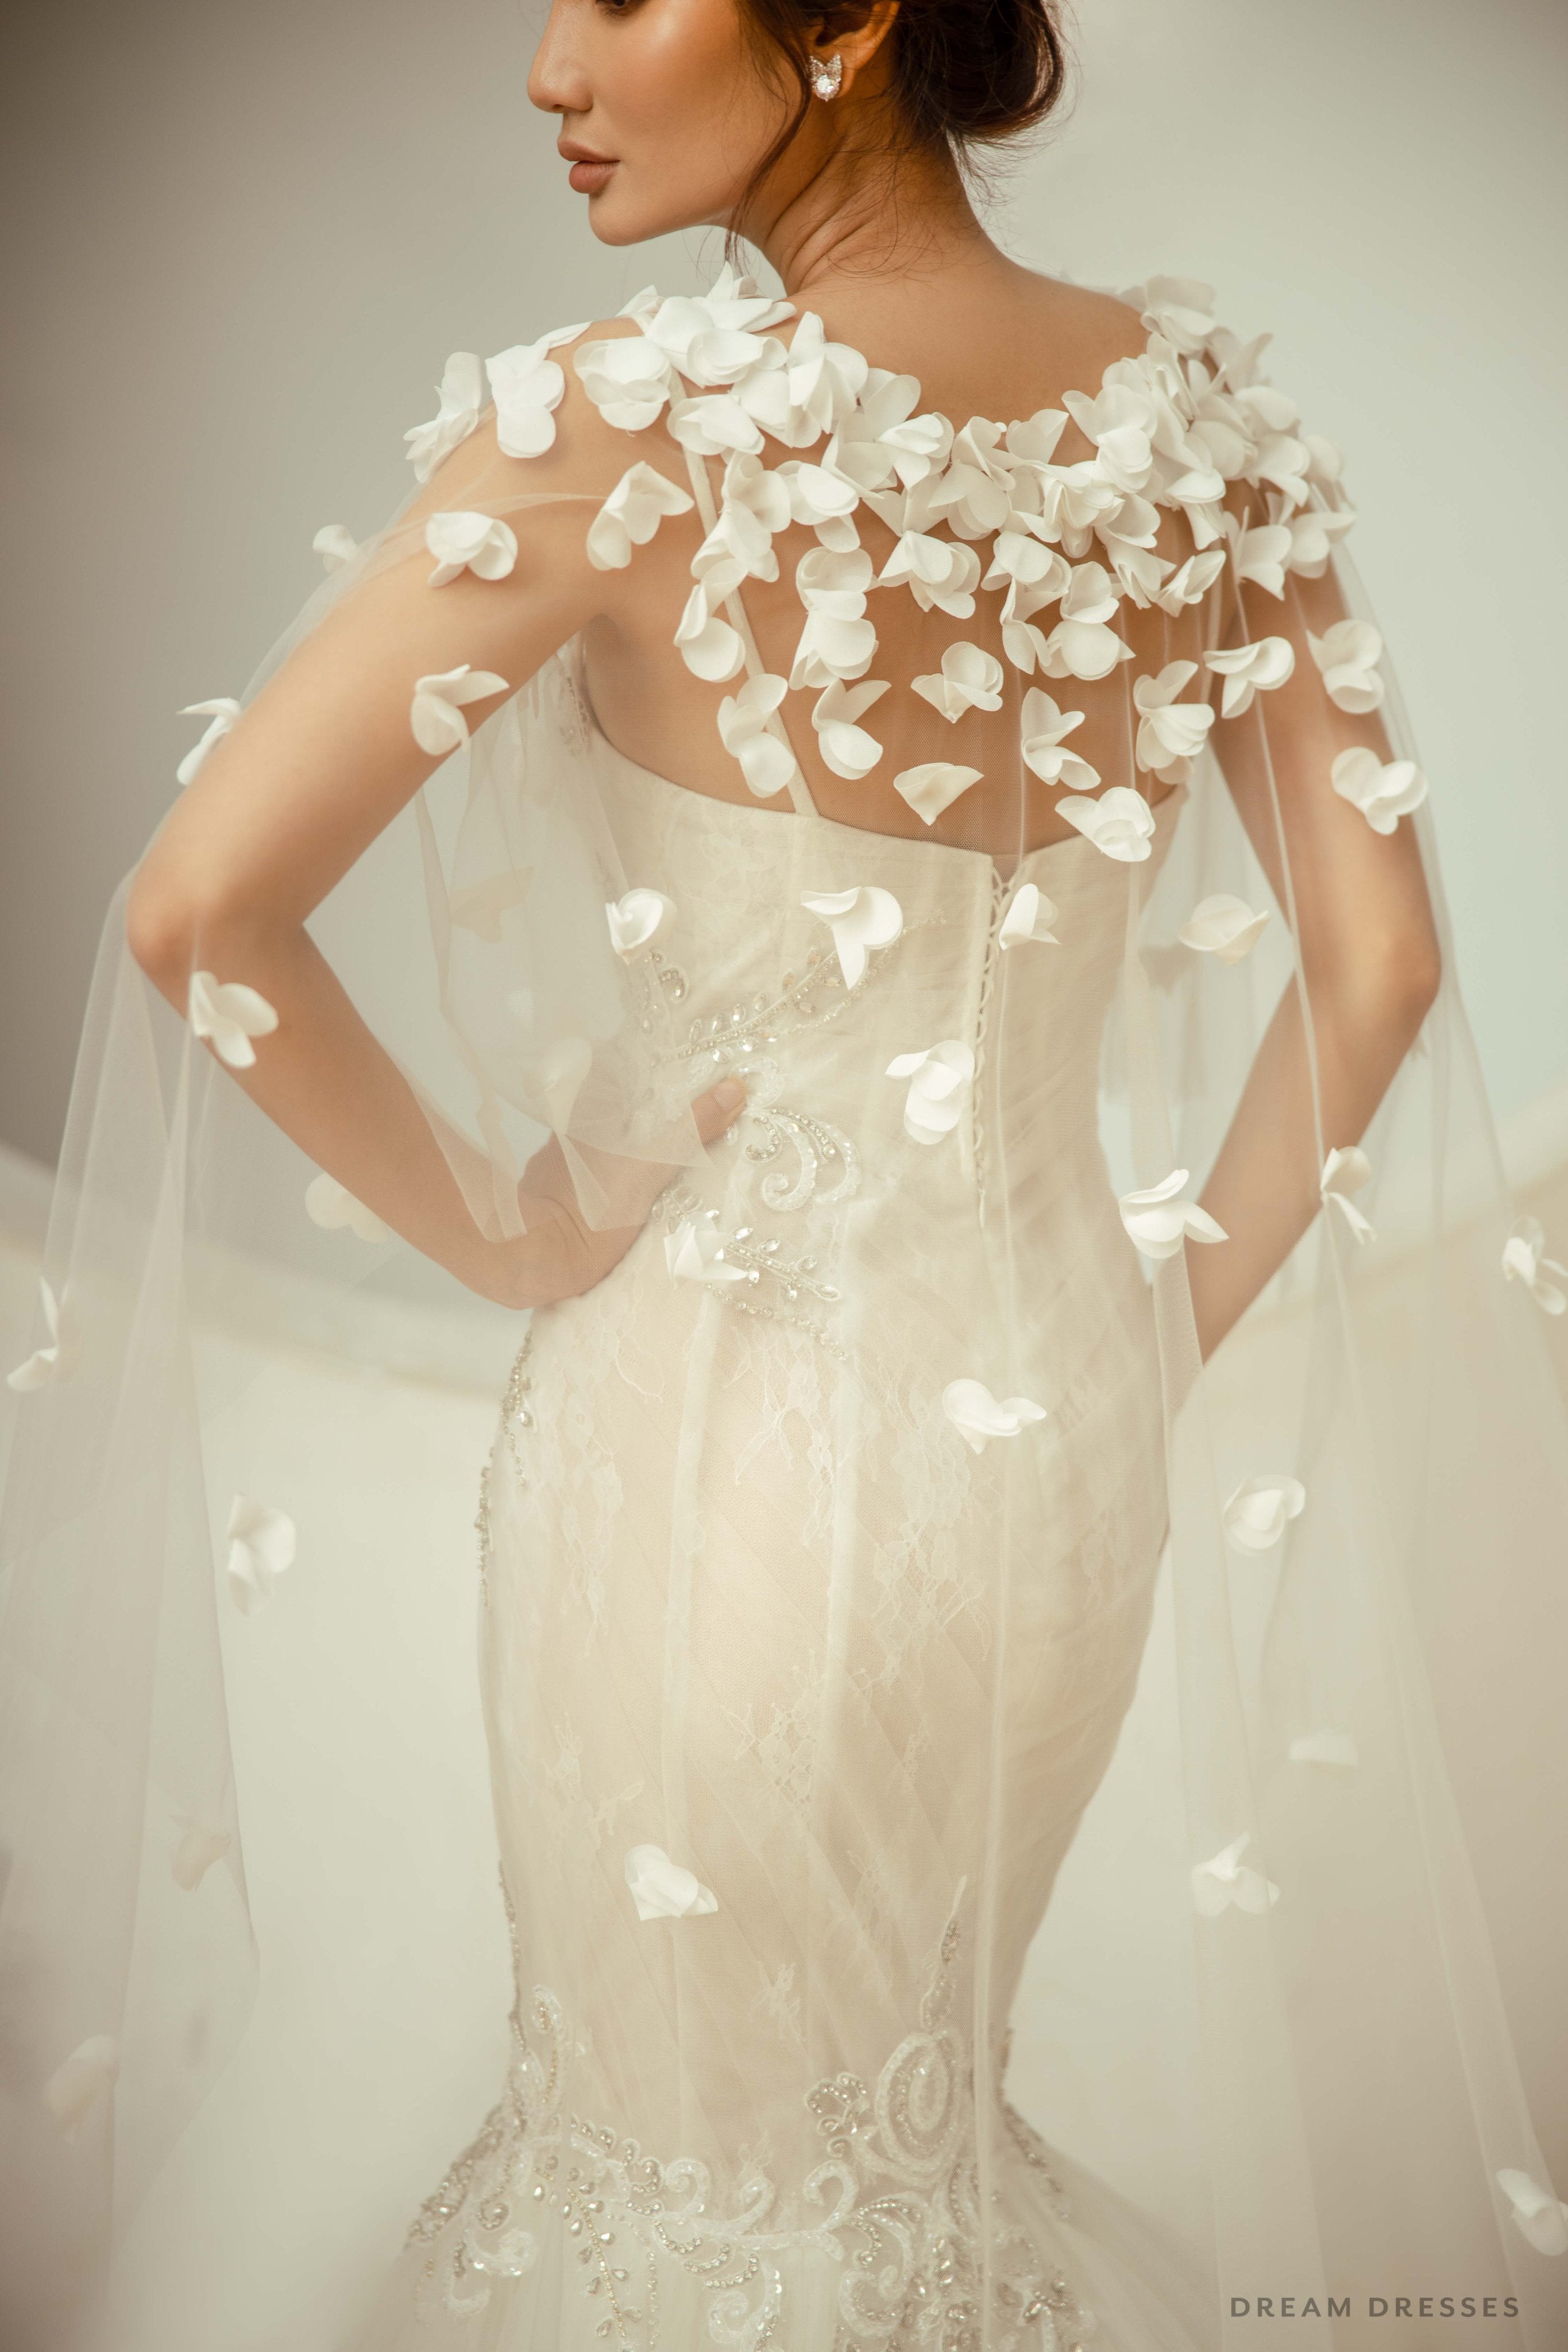 Bridal Cape Veil with 3D Floral Appliqué (#ORELLA)